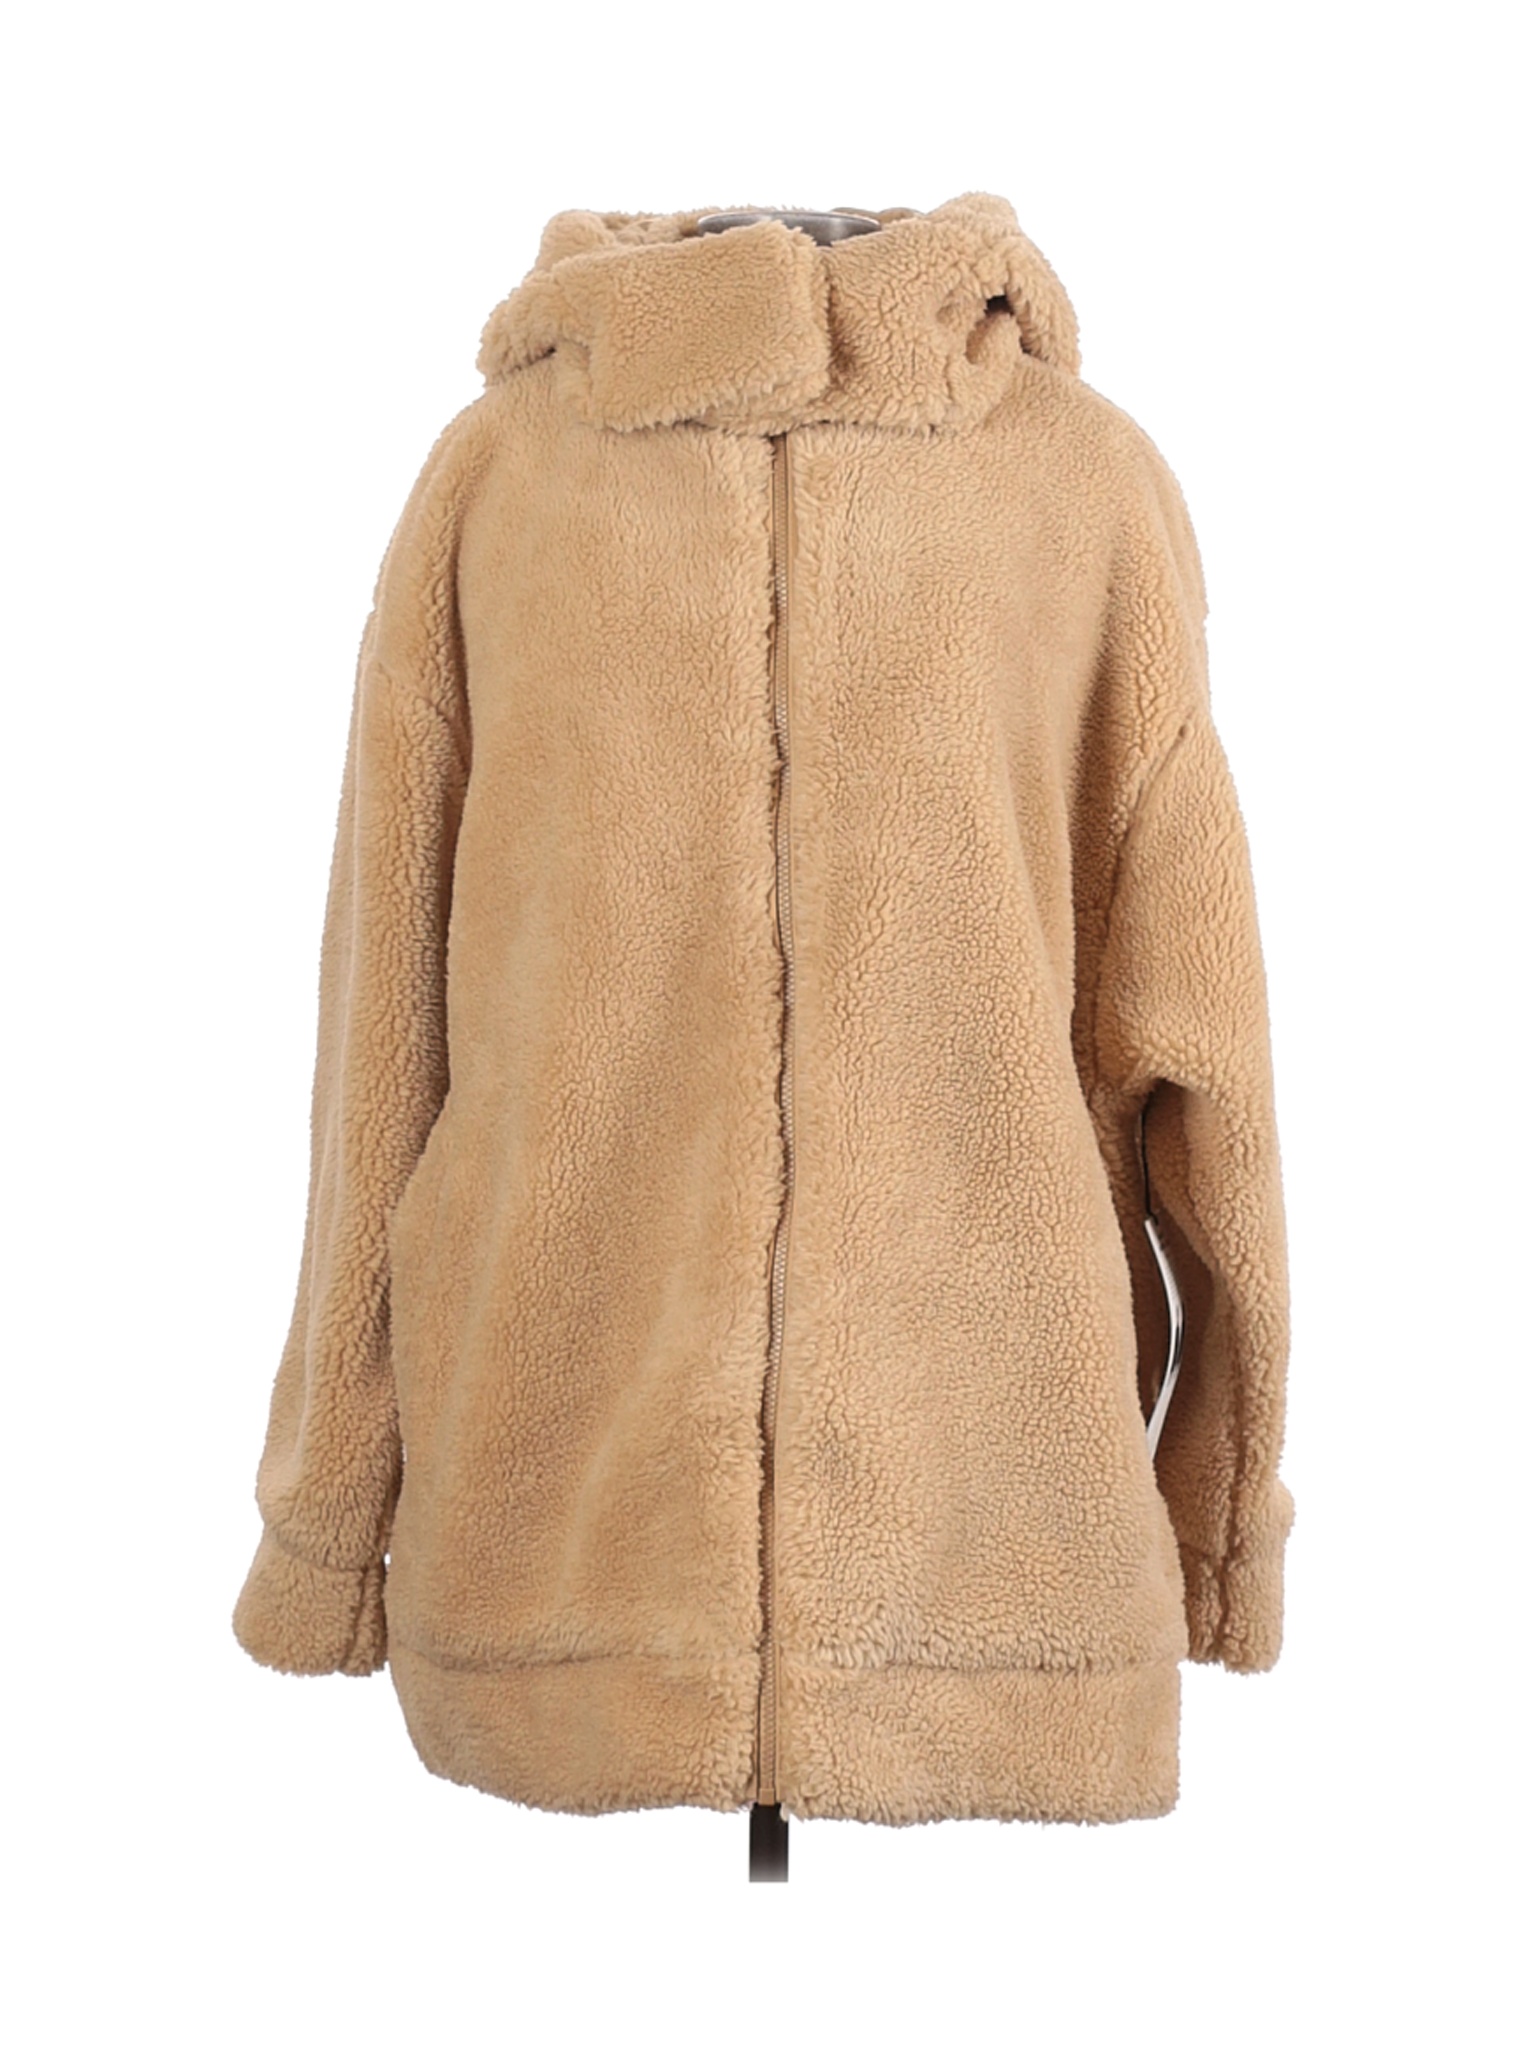 Alo Yoga Women Brown Faux Fur Jacket L | eBay